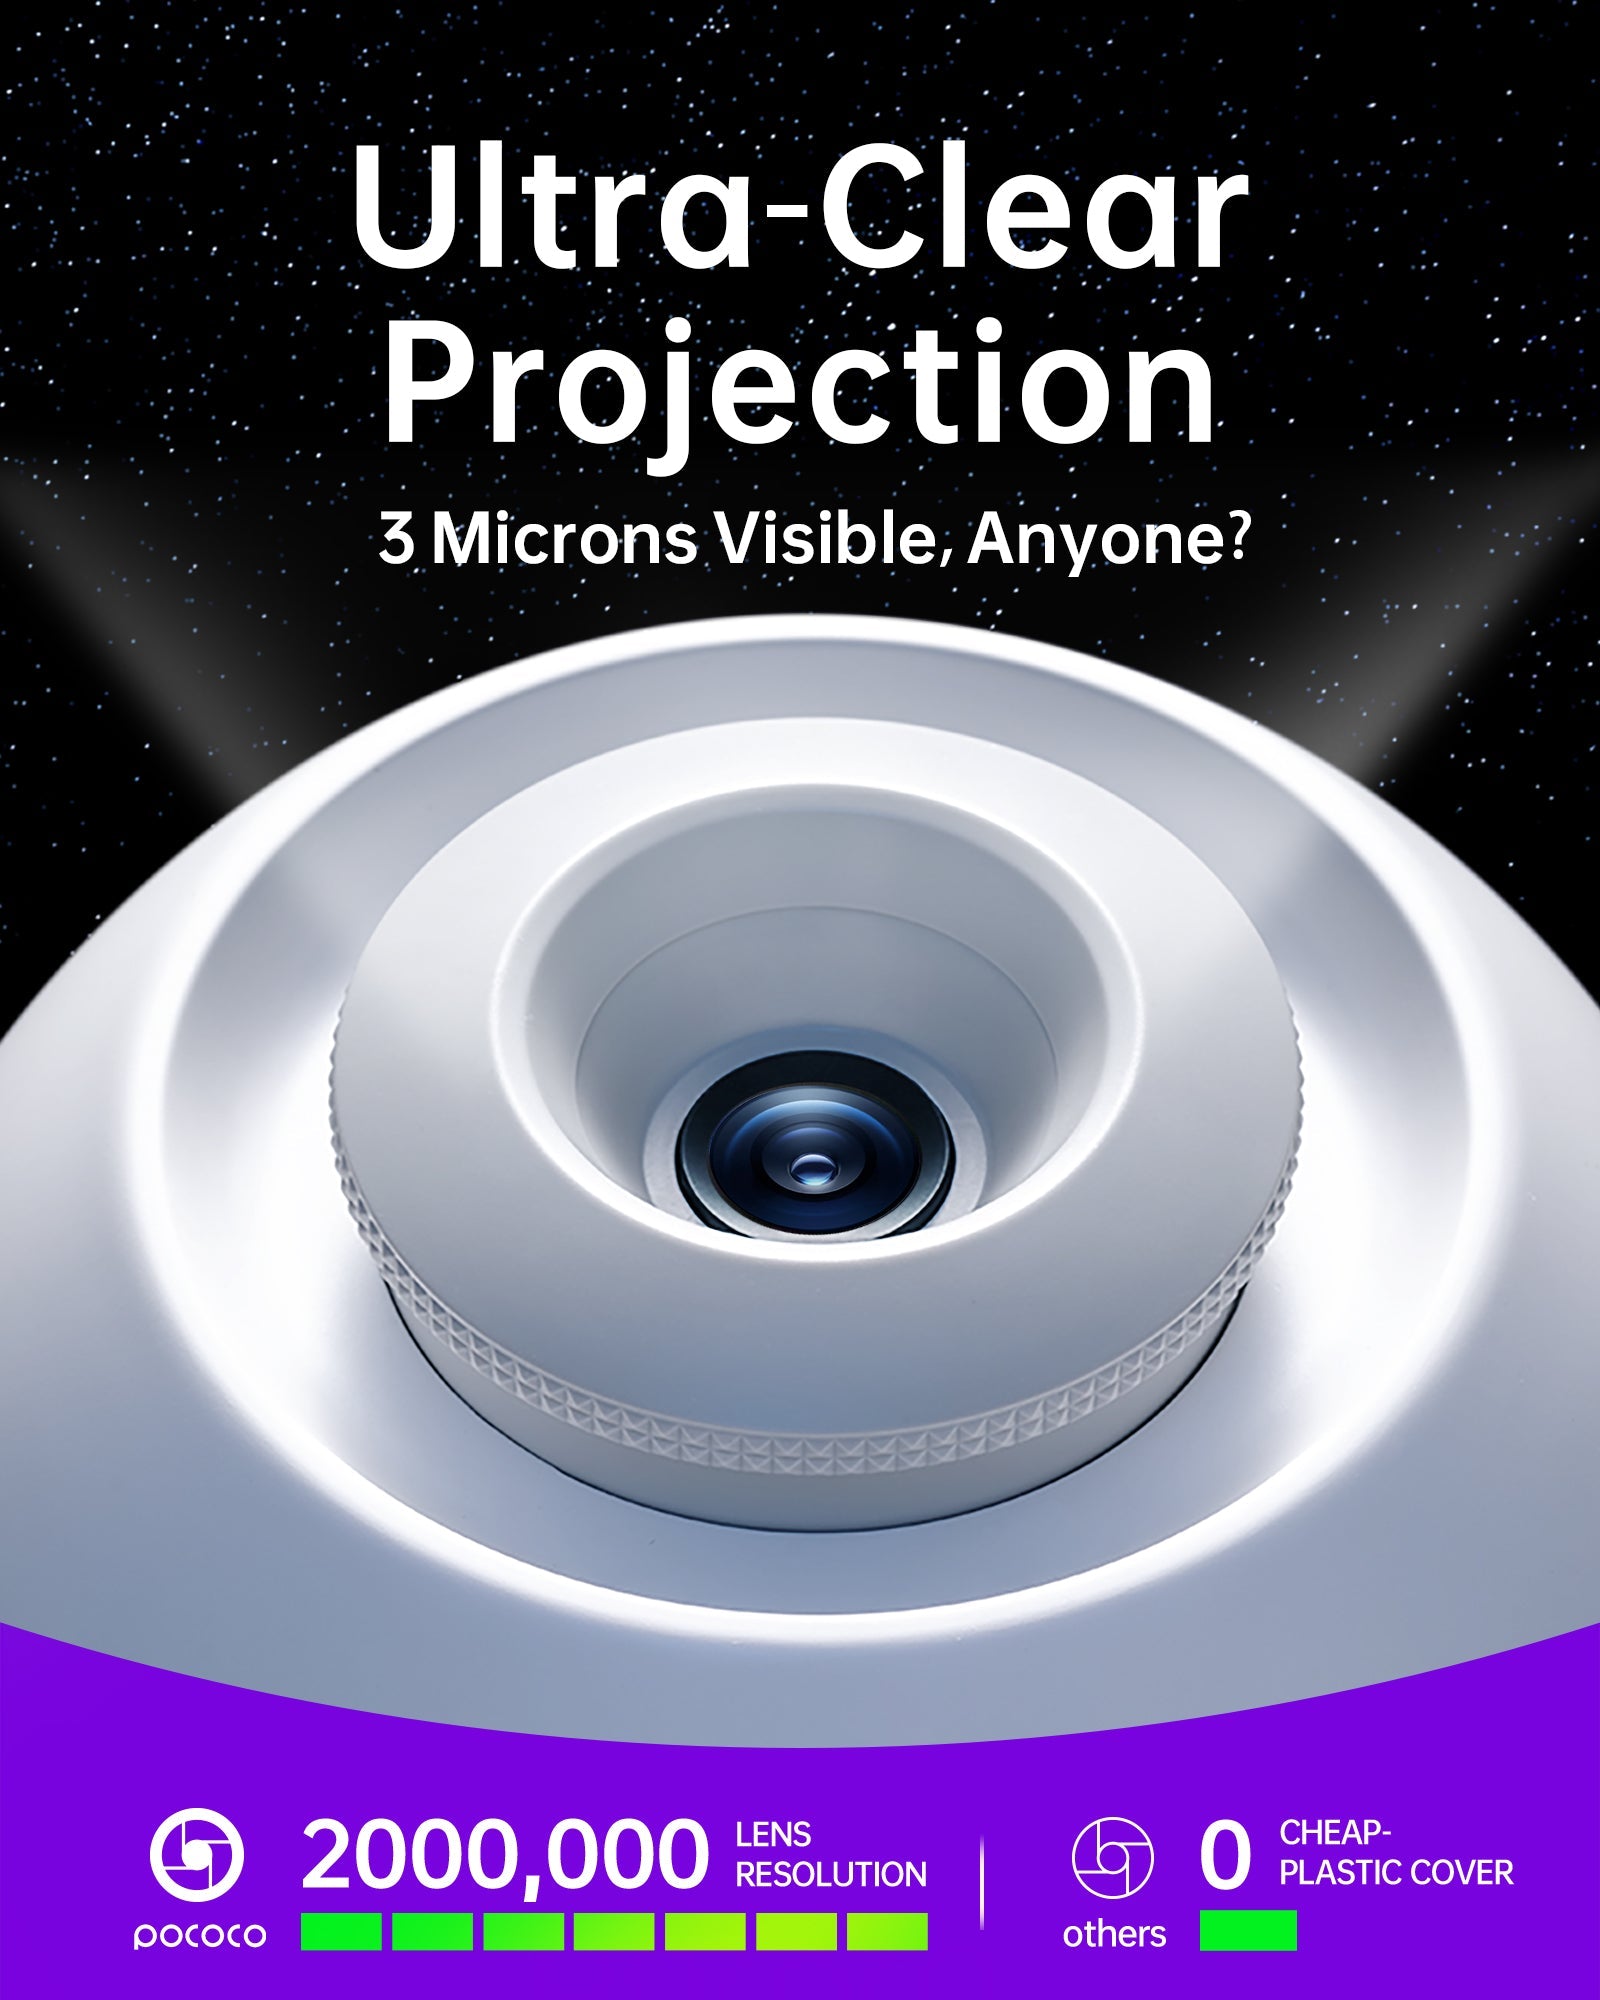 POCOCO Galaxy Projector lens display